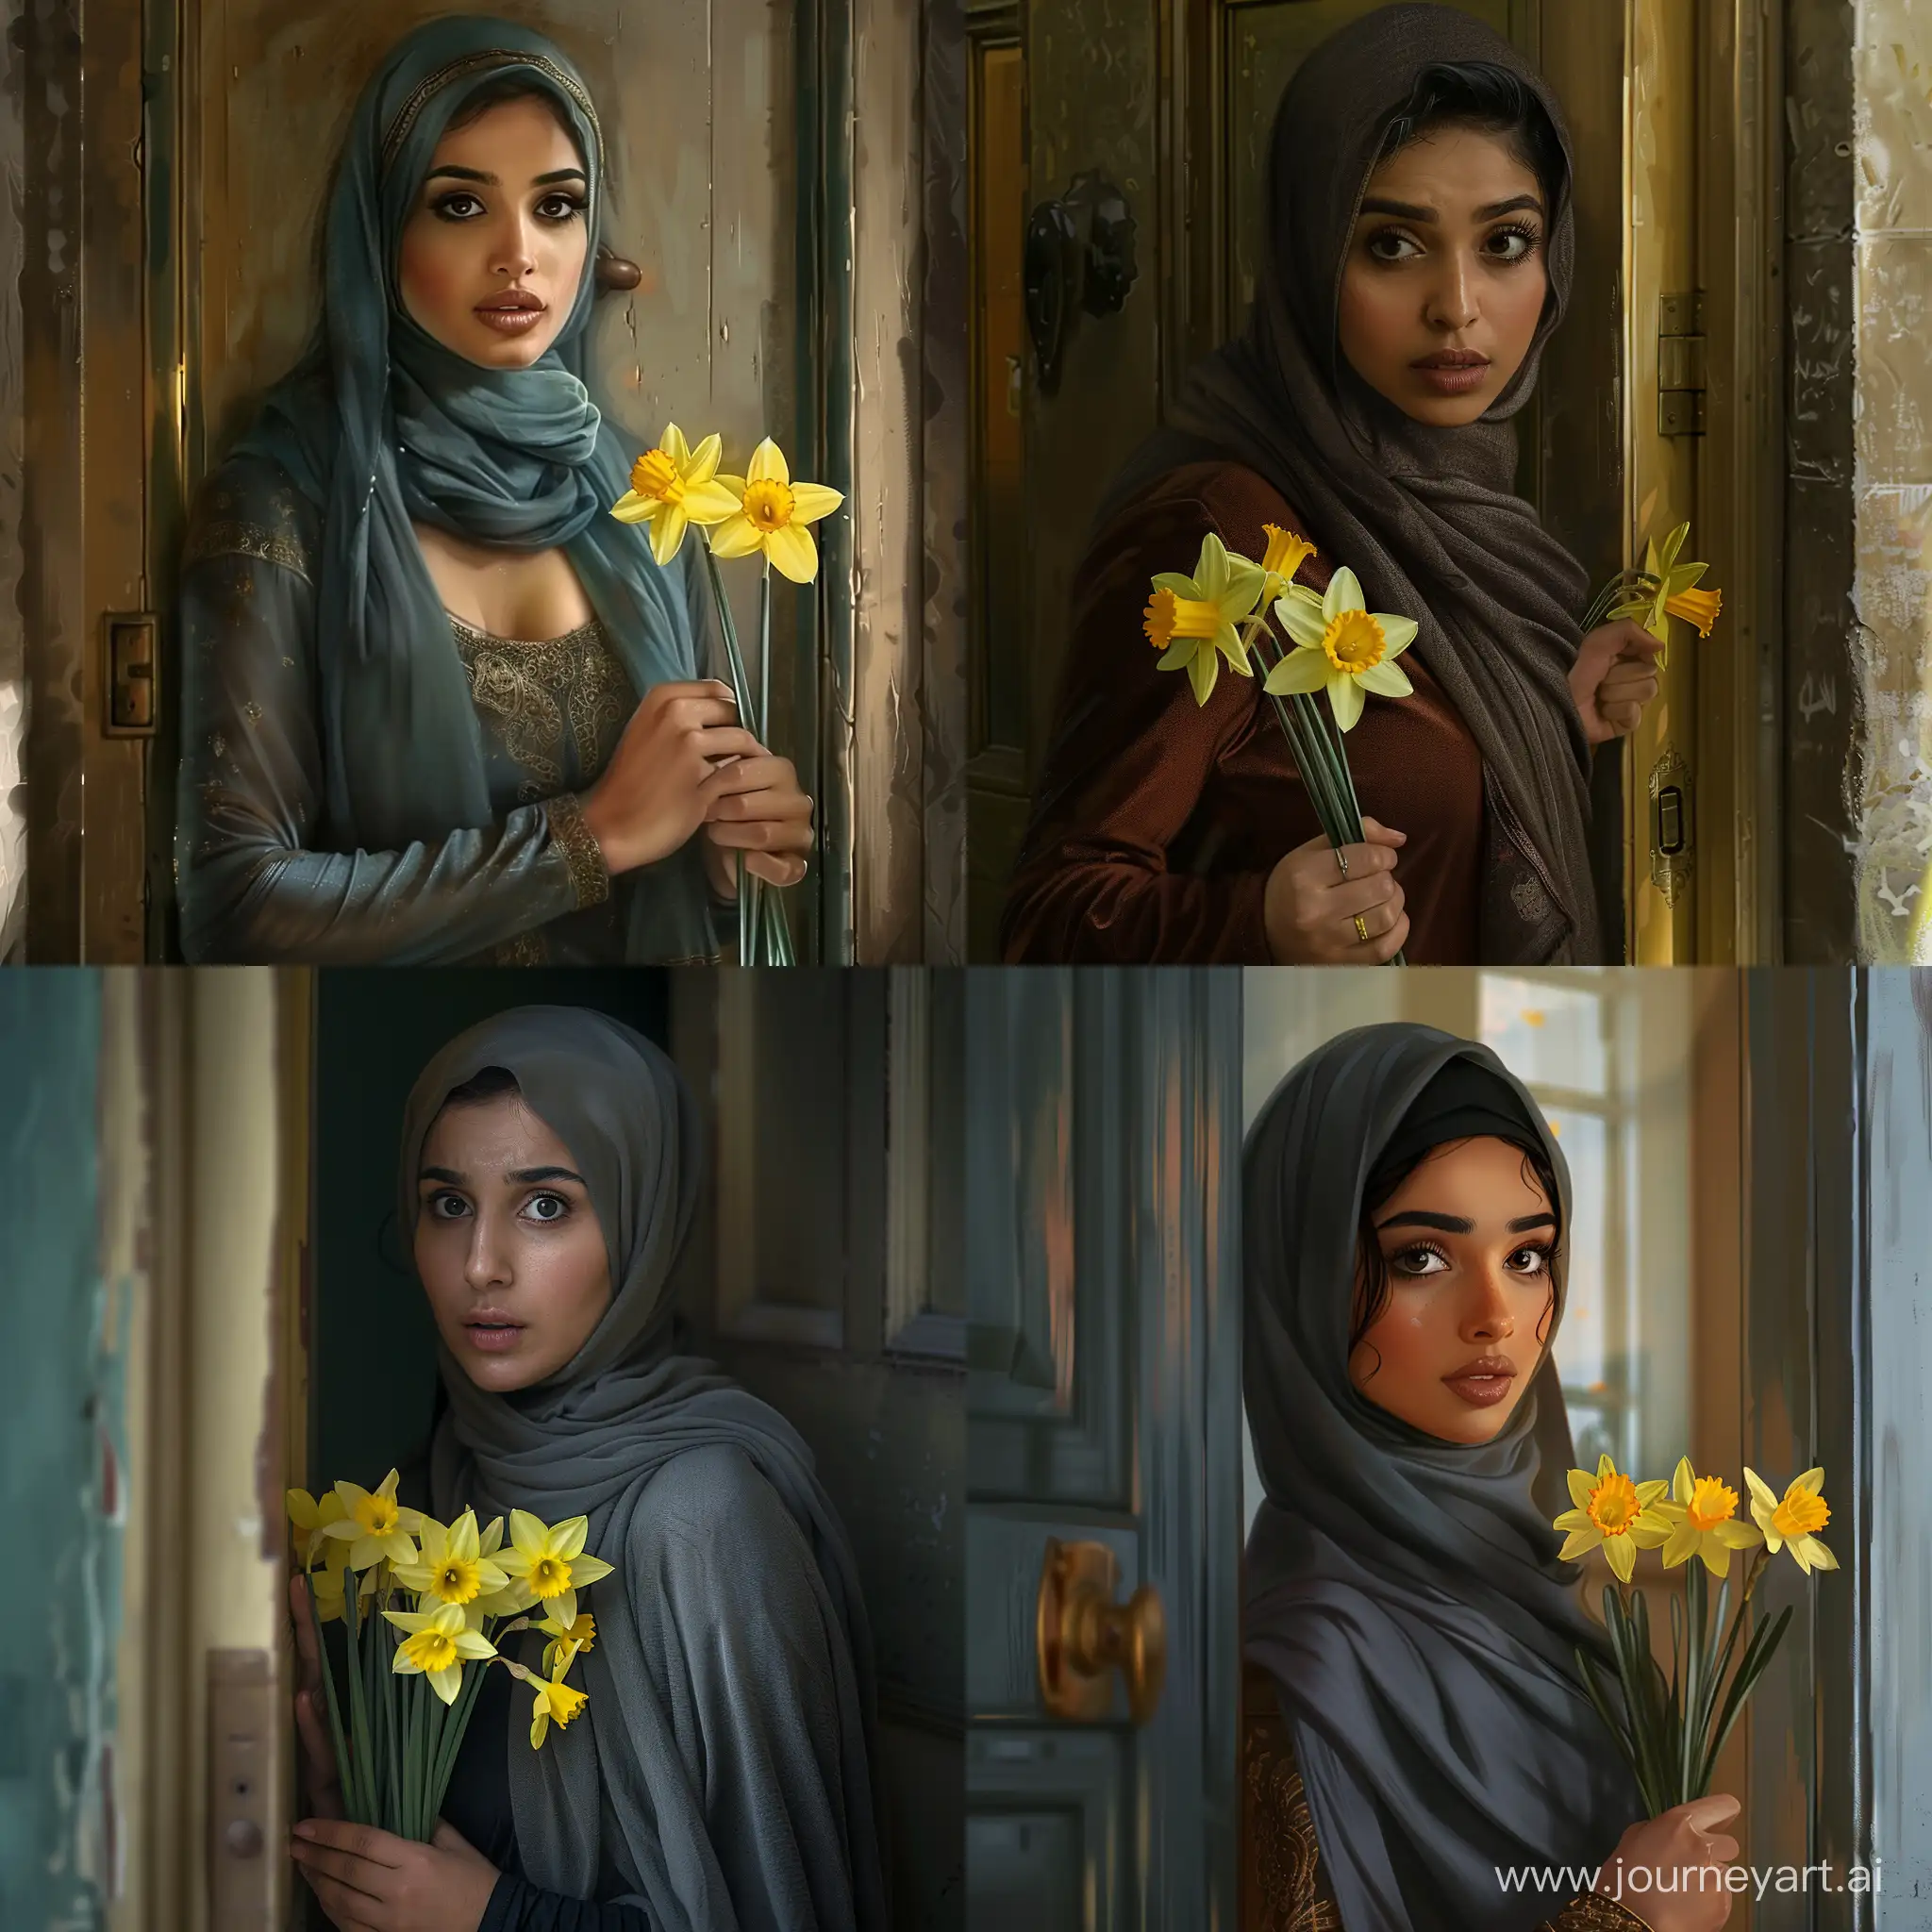 Una arabe bella musulmana, de 30 años de edad, con una mirada preocupada, está parada en la puerta esperando a alguien, con flores de narcisos en la mano.